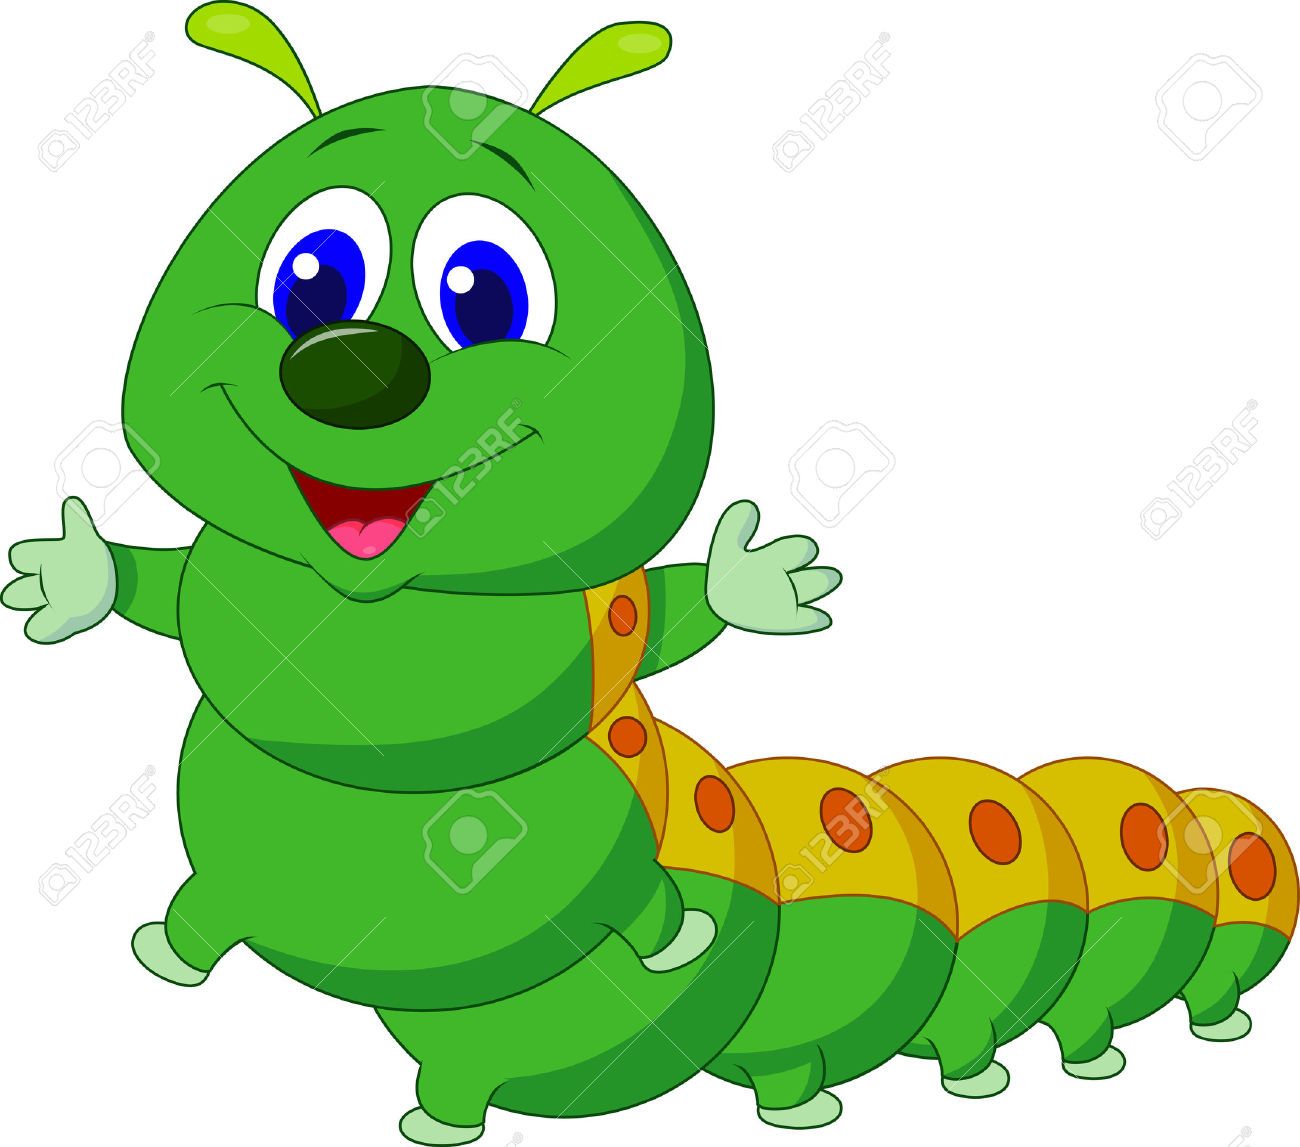 Caterpillar cartoon stock.